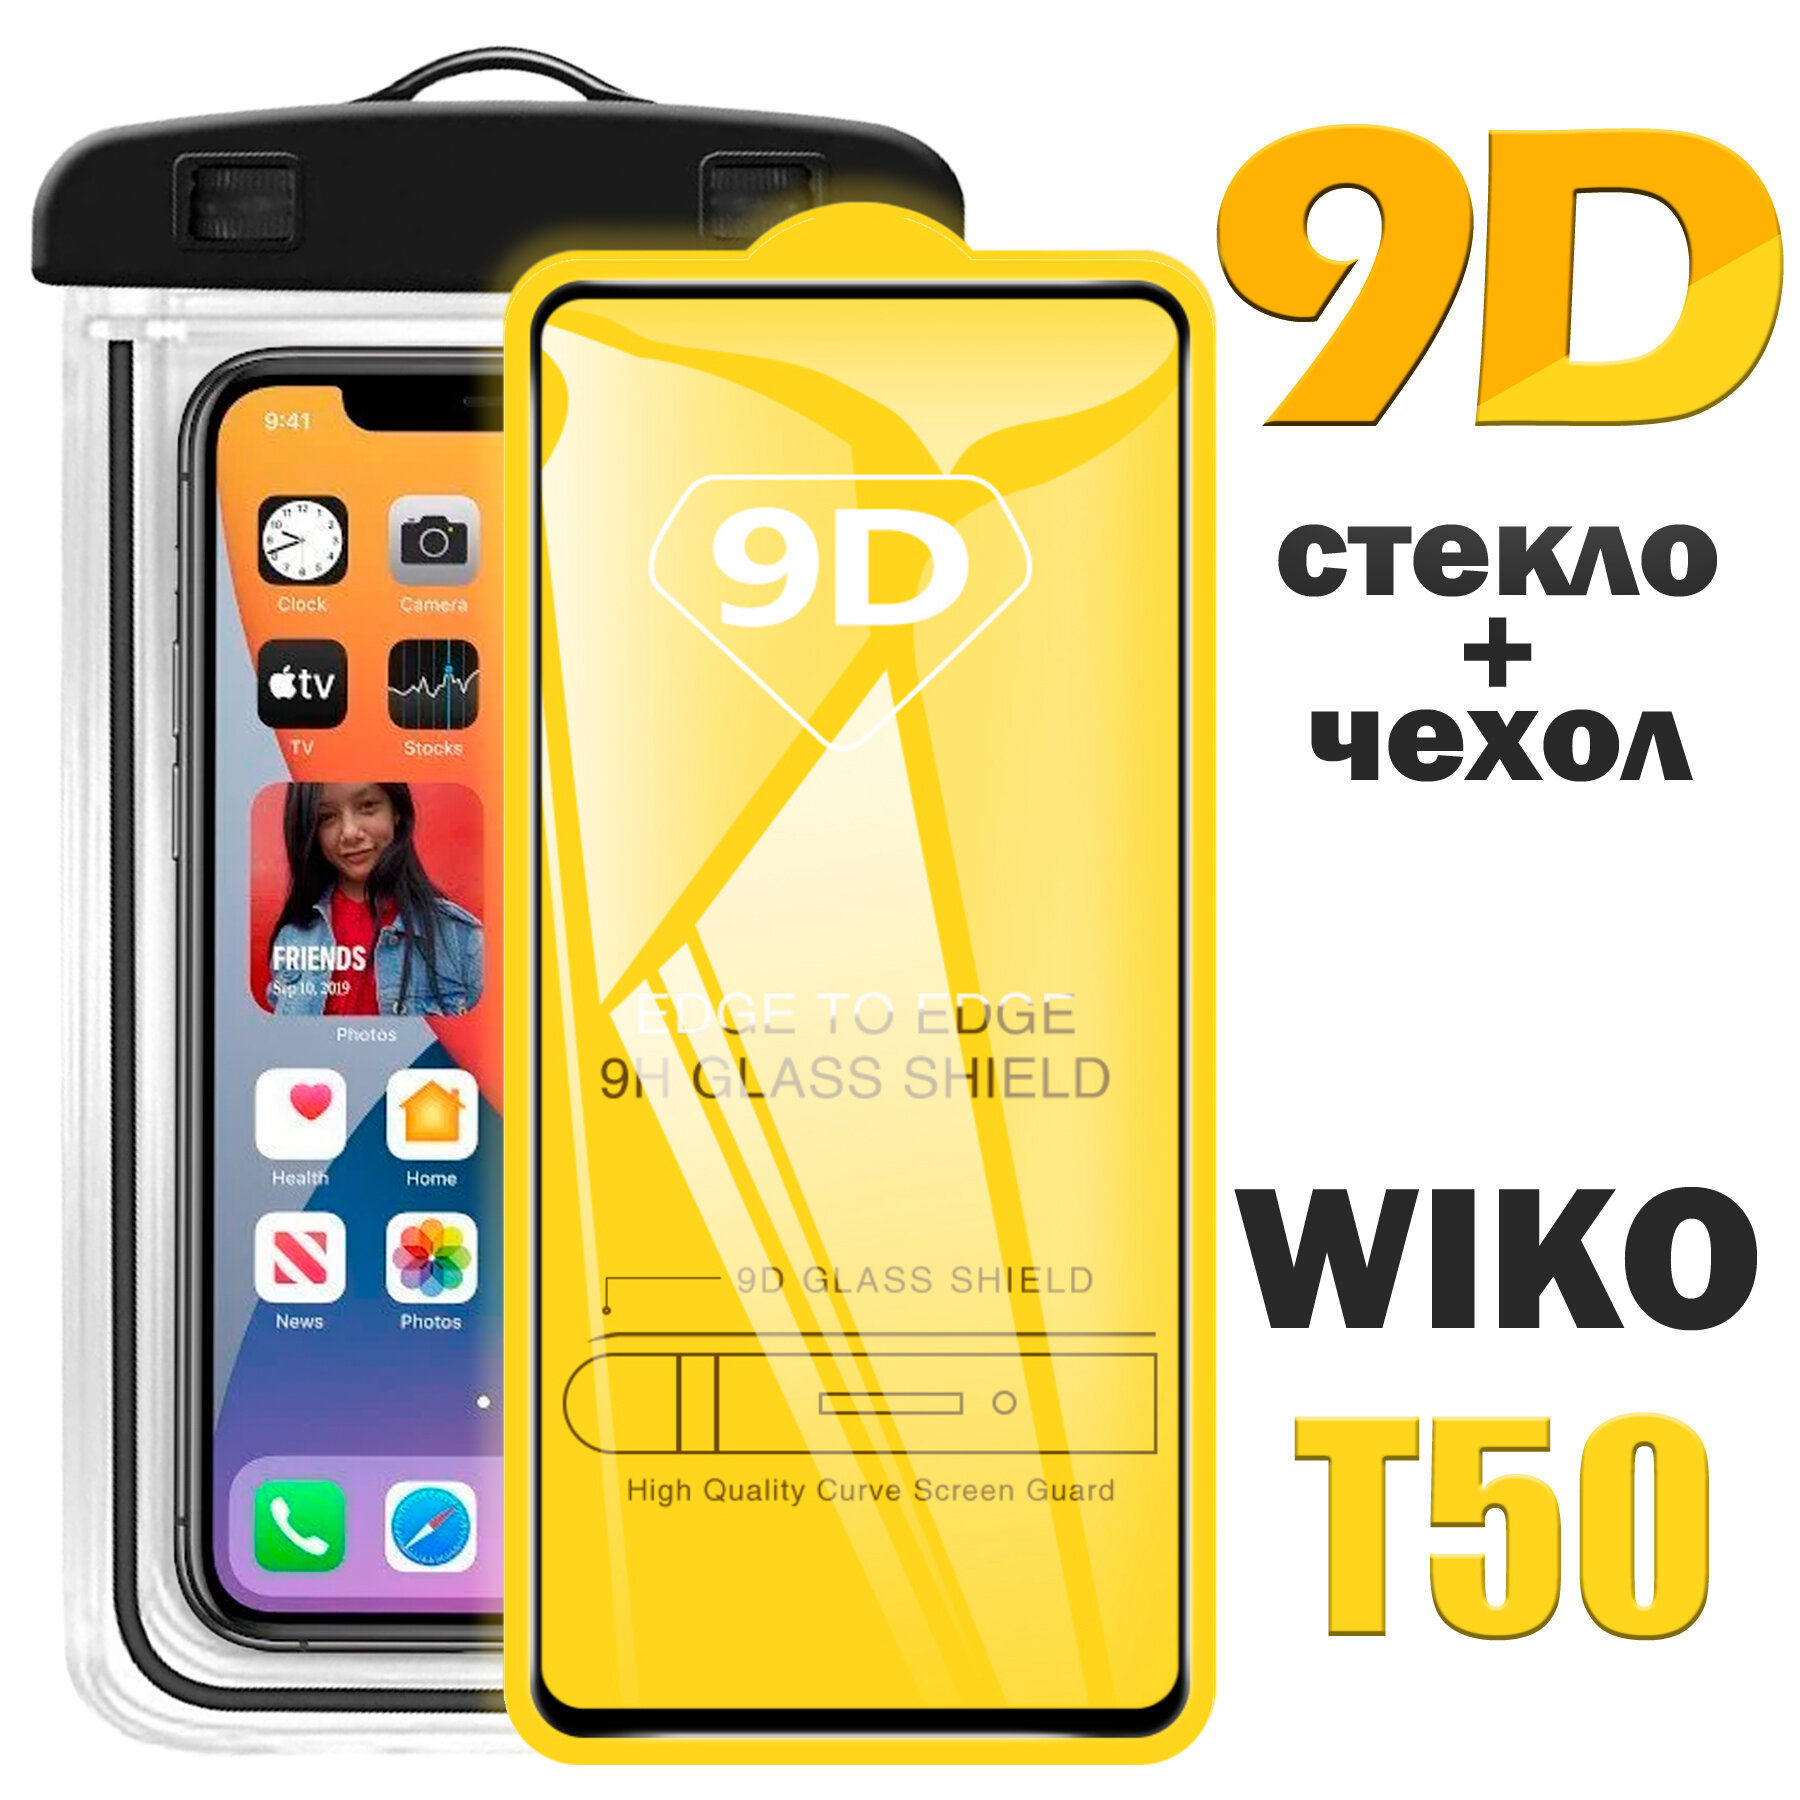 Защитное стекло 9D для Wiko T50 / Вико Т50 / комплект стекло + герметичный чехол